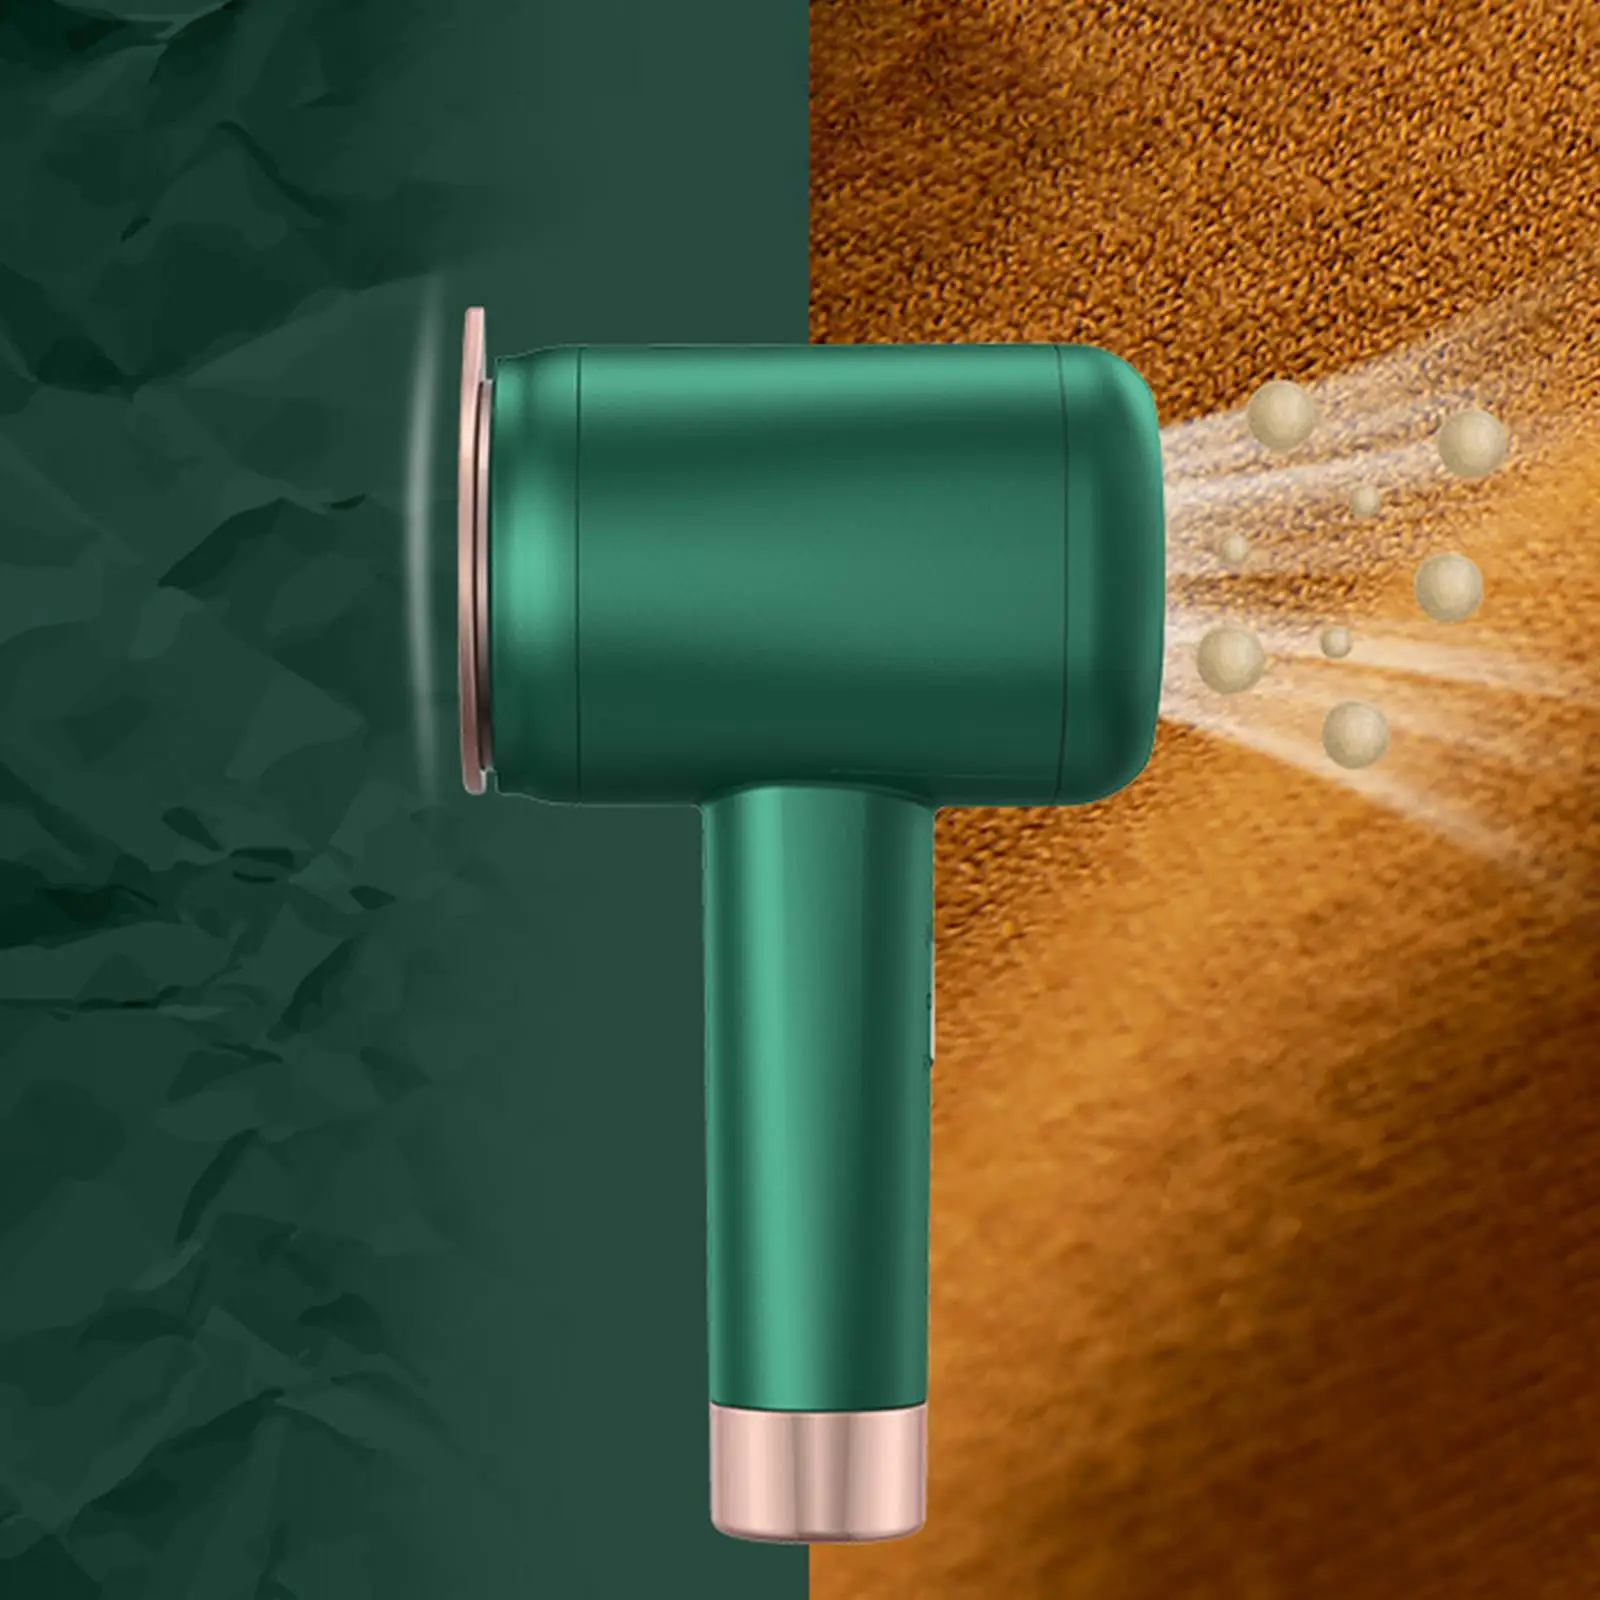 جهاز بخار حديد الاستخدام المزدوج، كرة شعر لإزالة الشعر باللون الأخضر، جهاز كي الملابس بالبخار الجاف والرطب للاستخدام المنزلي خارج المنزل